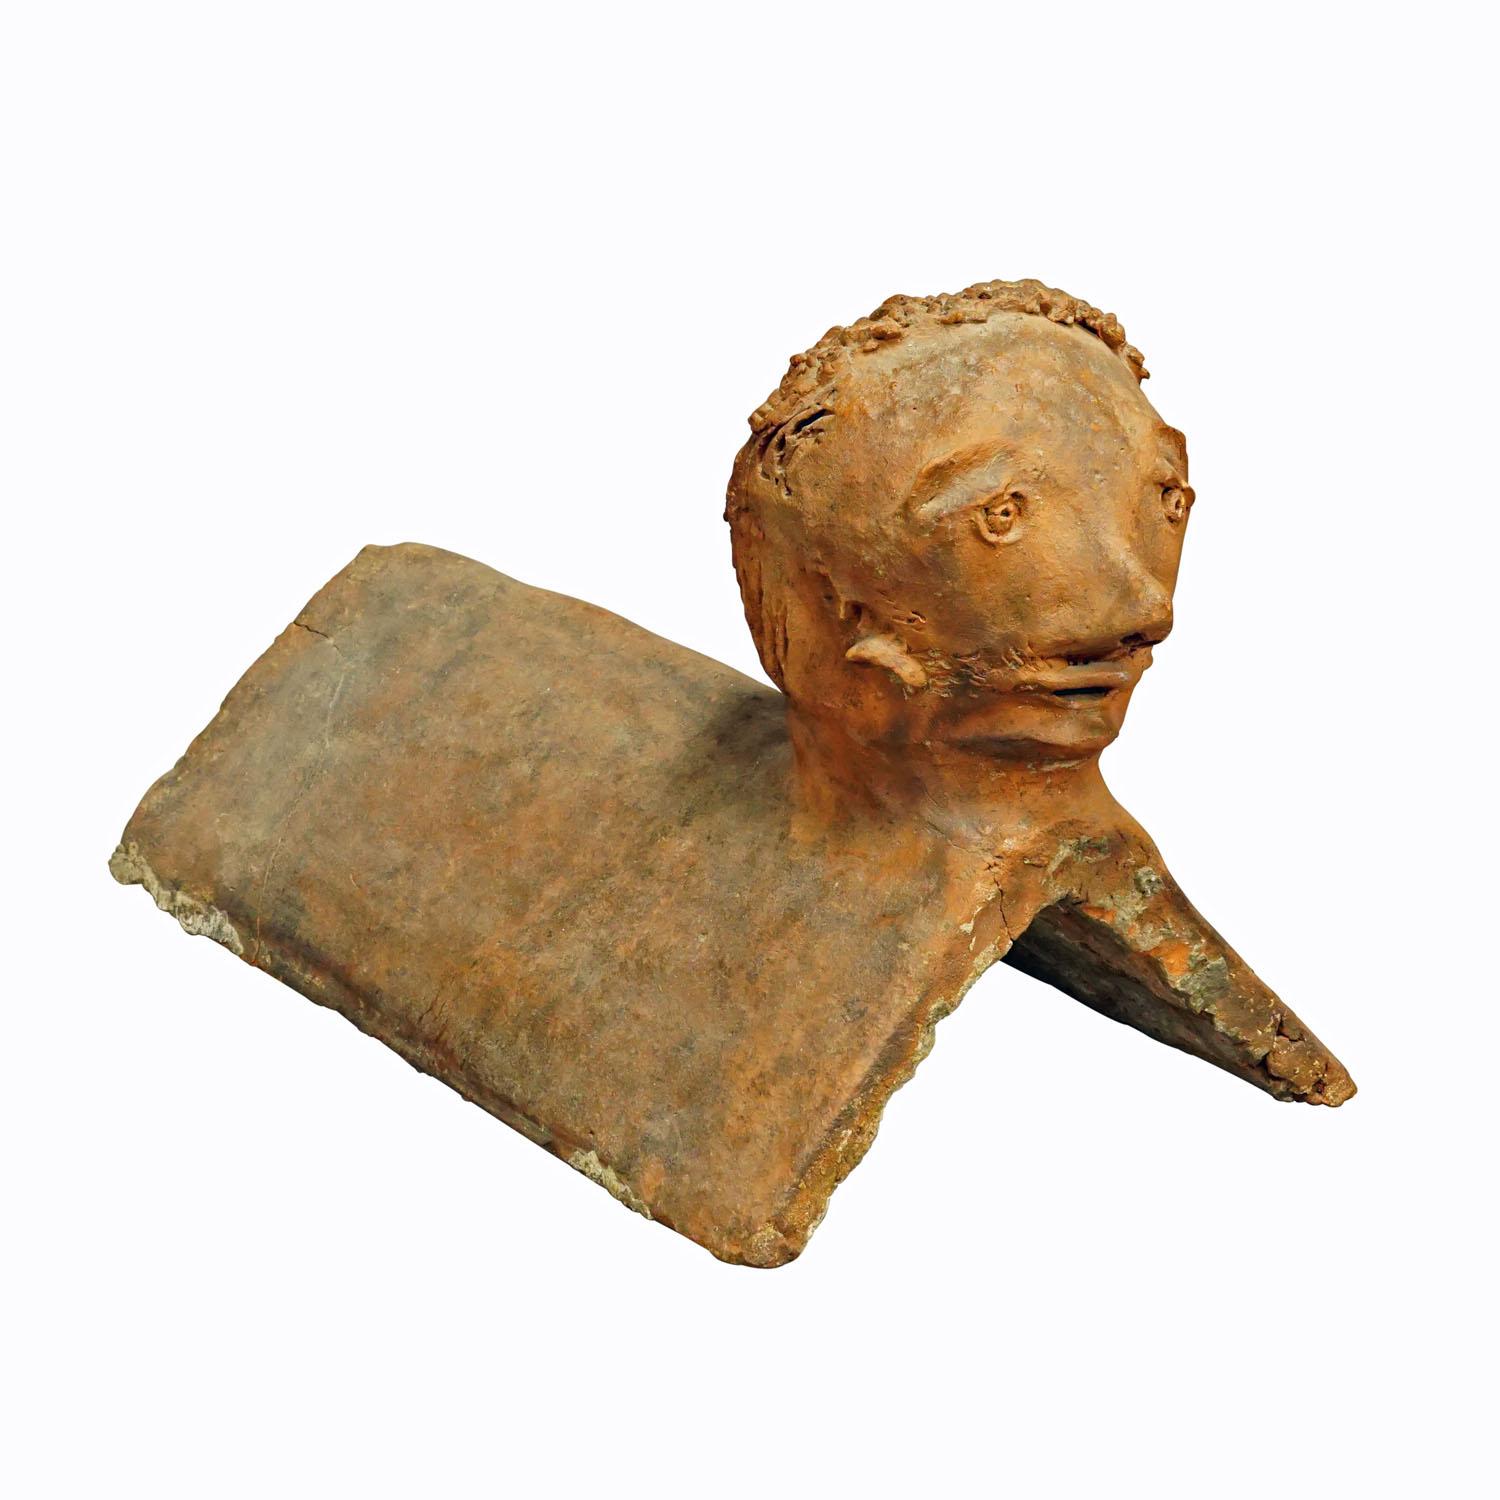 Brick d'équitation fait main, Allemagne, 1844

Un cavalier de toit antique en argile avec une tête dans le style de l'art outsider. Fabriqué à la main en Allemagne en 1844. Bon état, un bord coupé. Signature inscrite avec l'année de fabrication sur